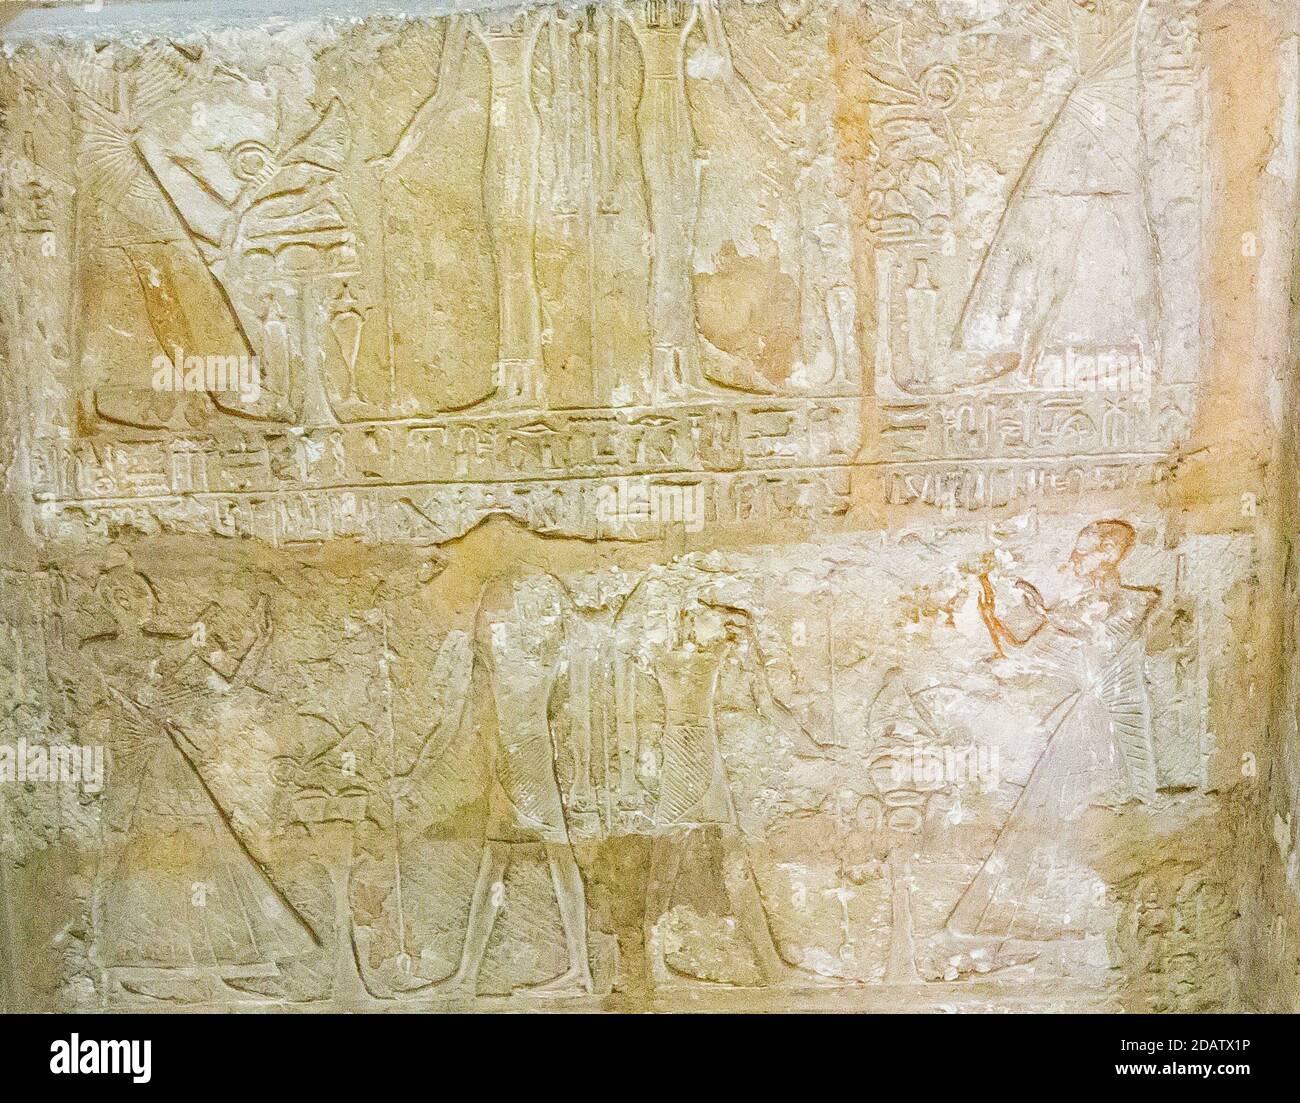 Égypte, le Caire, Musée égyptien, partie du tombeau de Mès (ou Mose), de Saqqara. Ce tombeau est très célèbre pour son "texte juridique". Banque D'Images